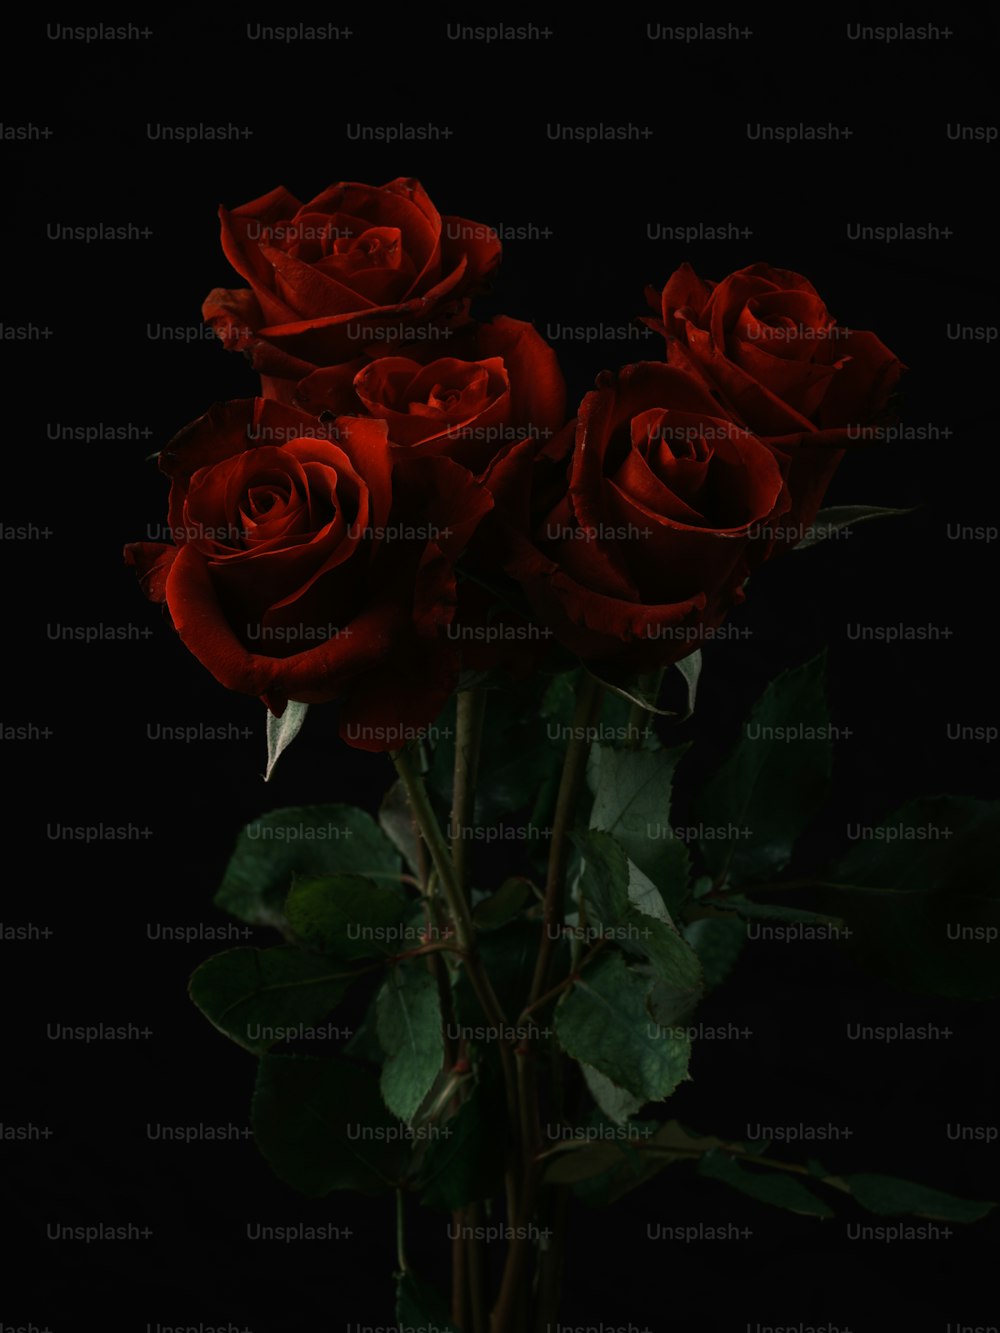 Ein Strauß roter Rosen in einer Vase